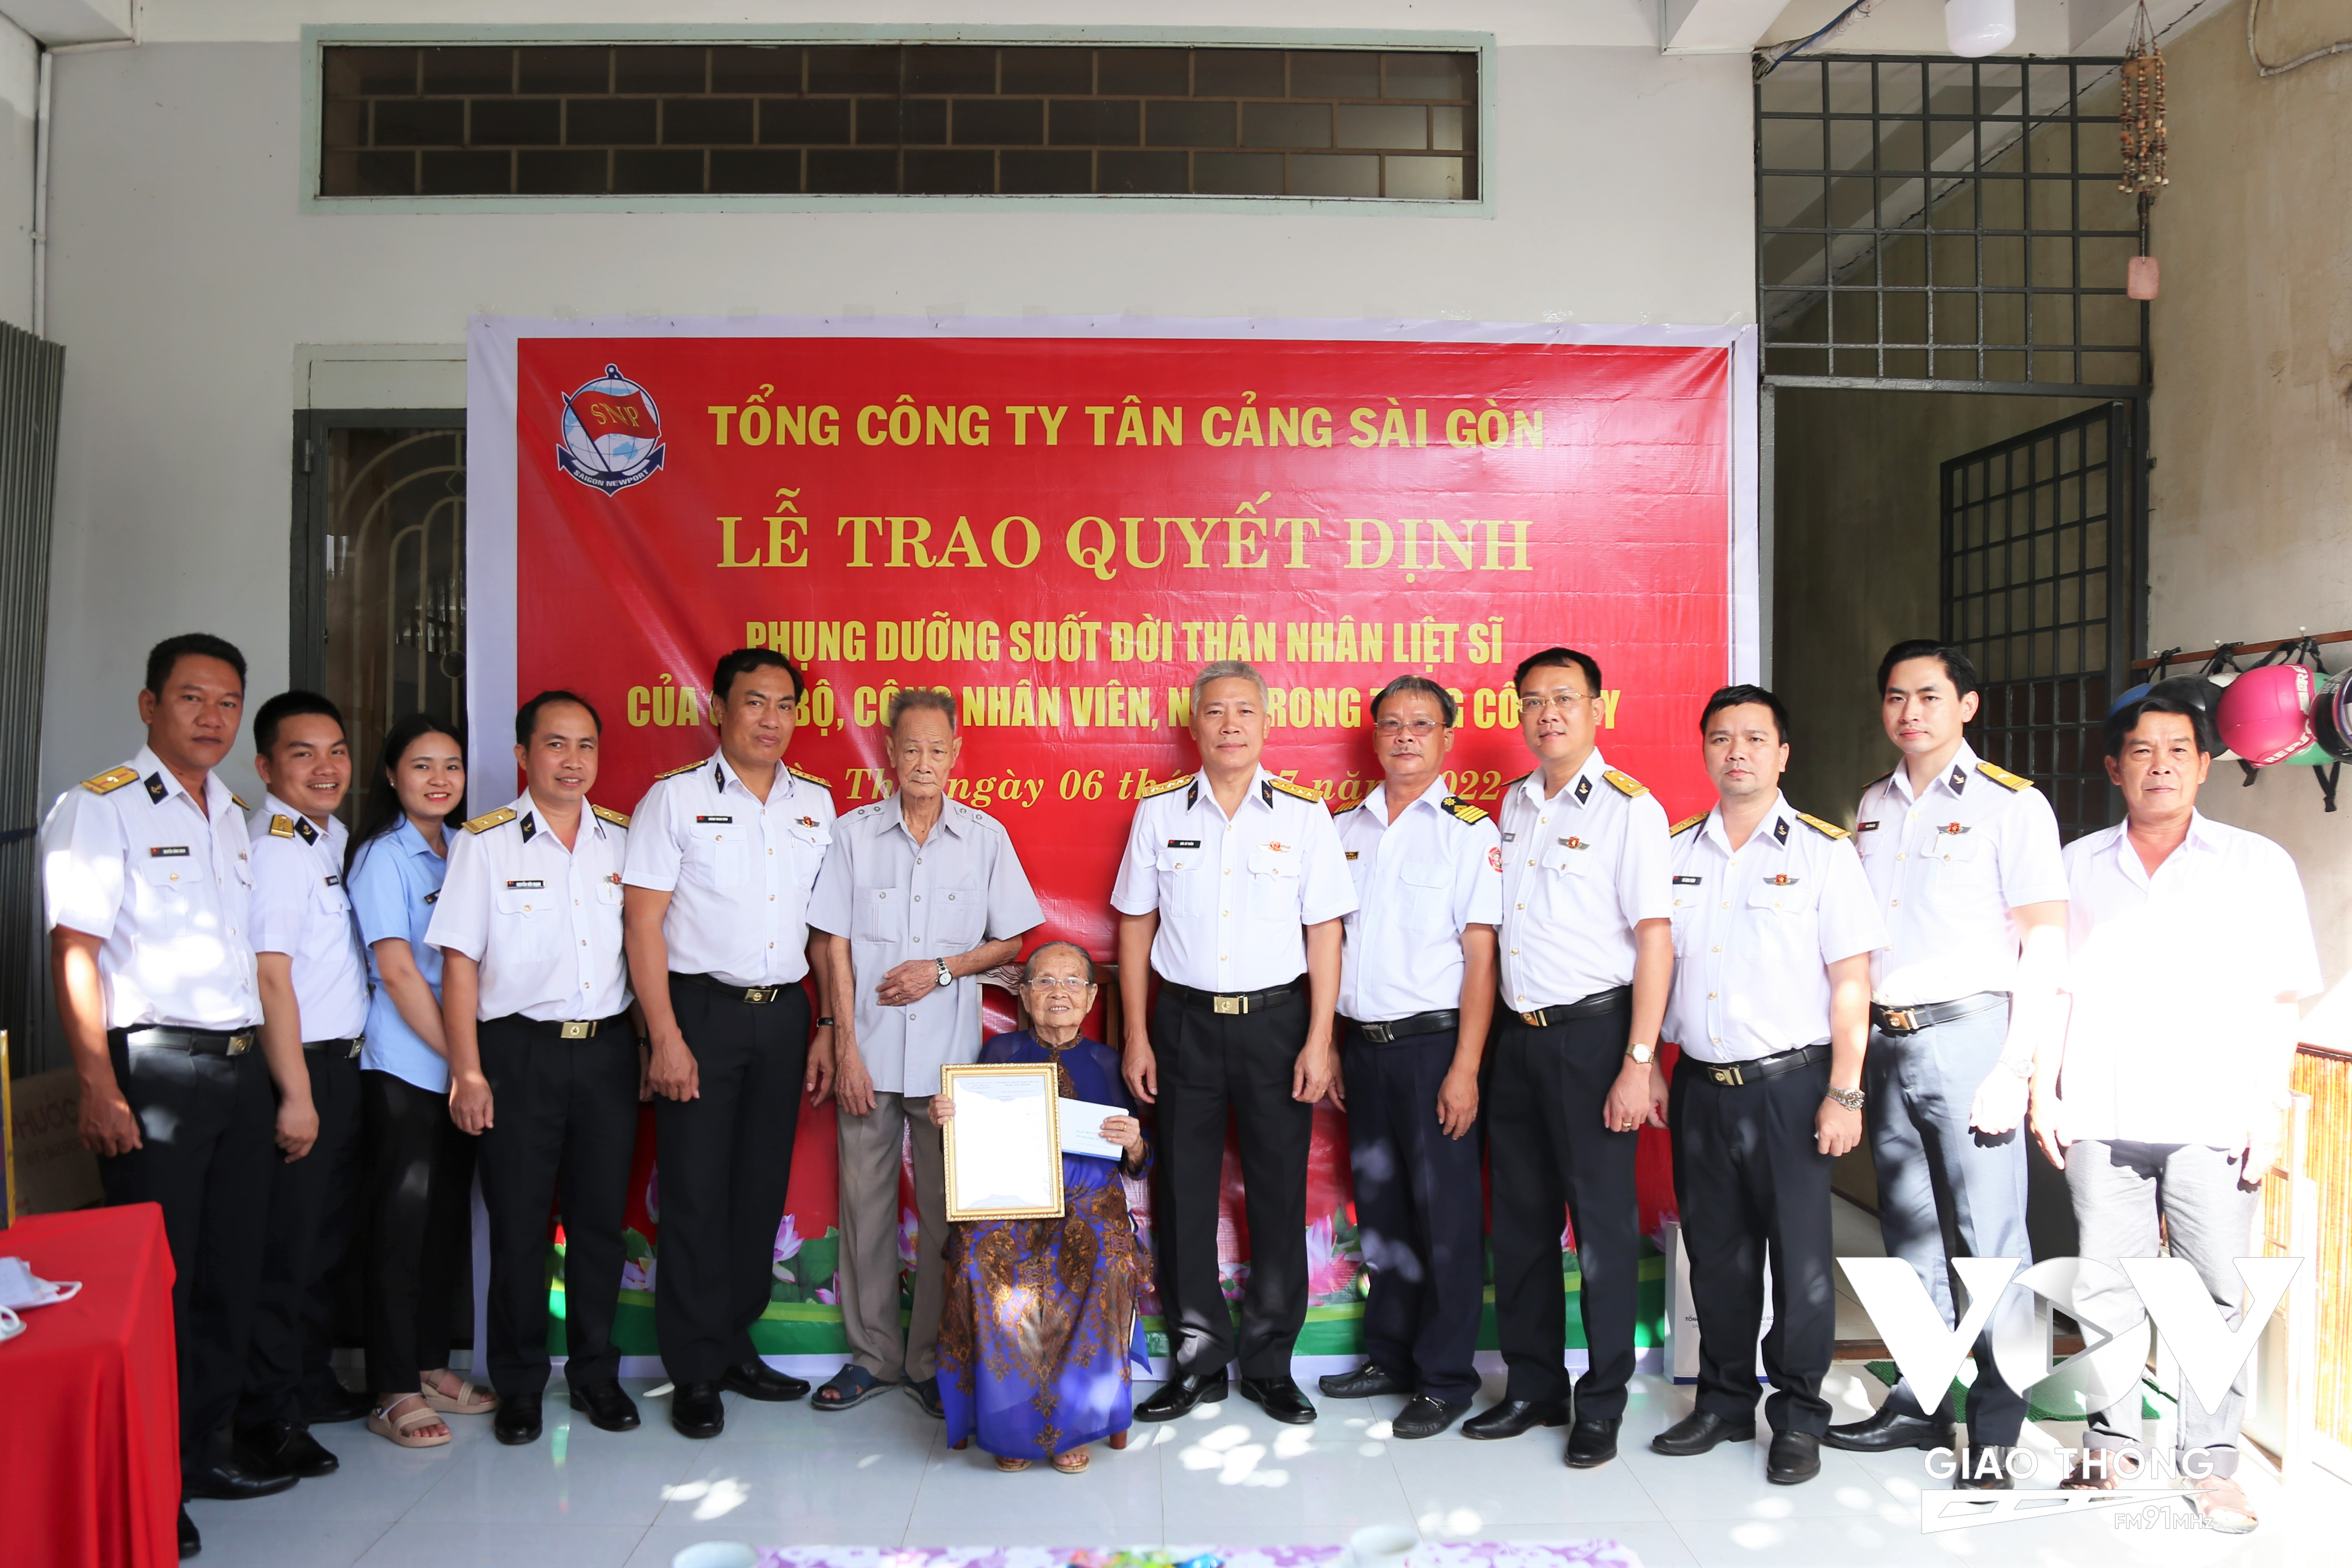 Đại tá Bùi Sĩ Tuấn (người thứ 6 bên phải), Phó Tổng giám đốc TCT Tân Cảng Sài Gòn trao Quyết định phụng dưỡng bà Nguyễn Thị Thơi.